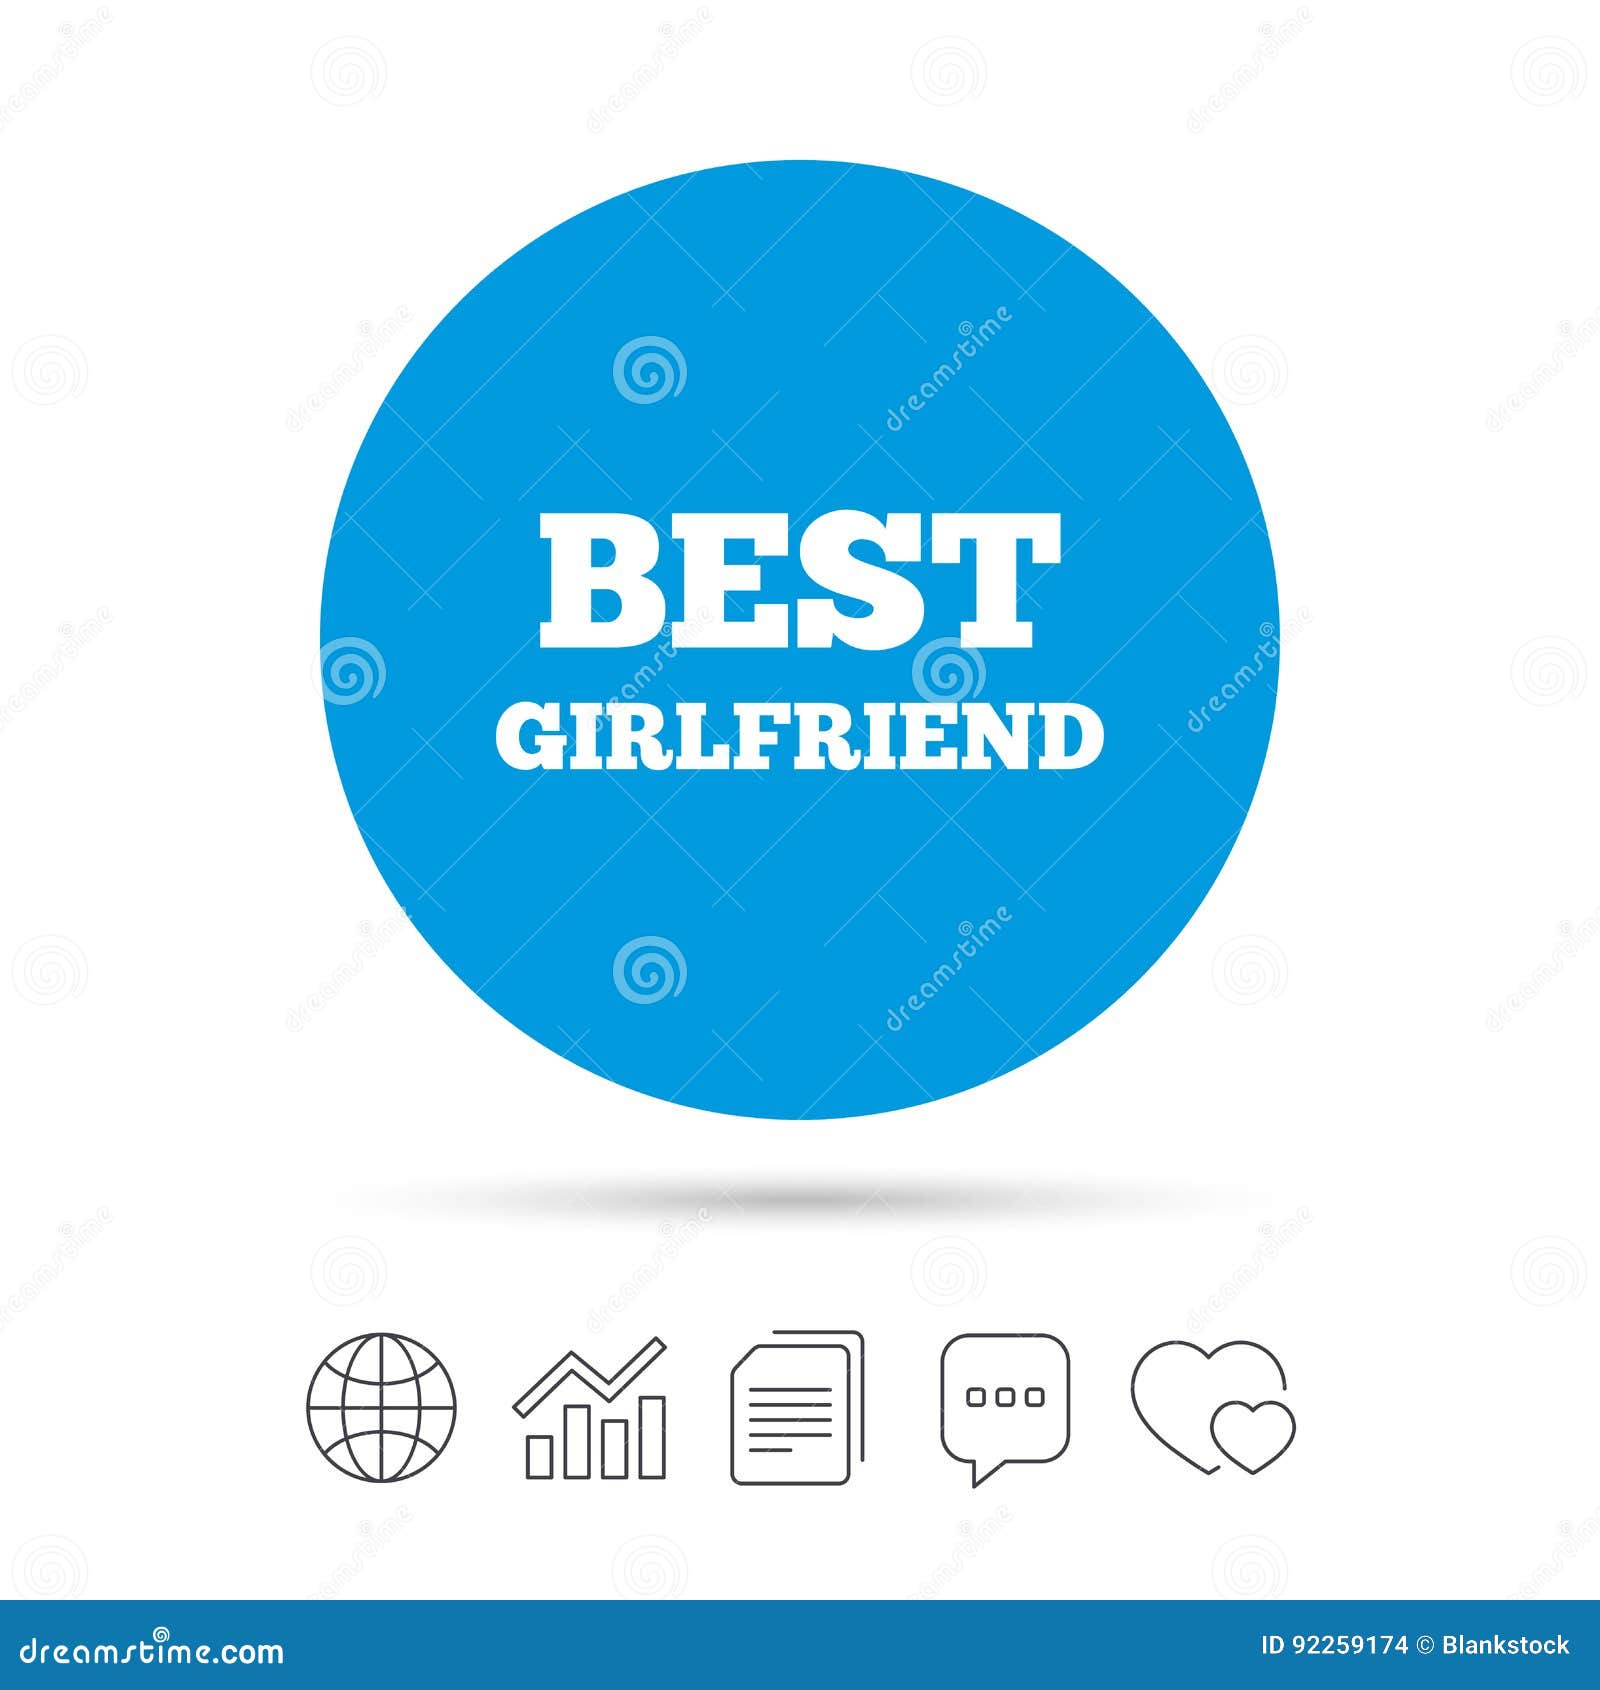 Girlfriend Chart